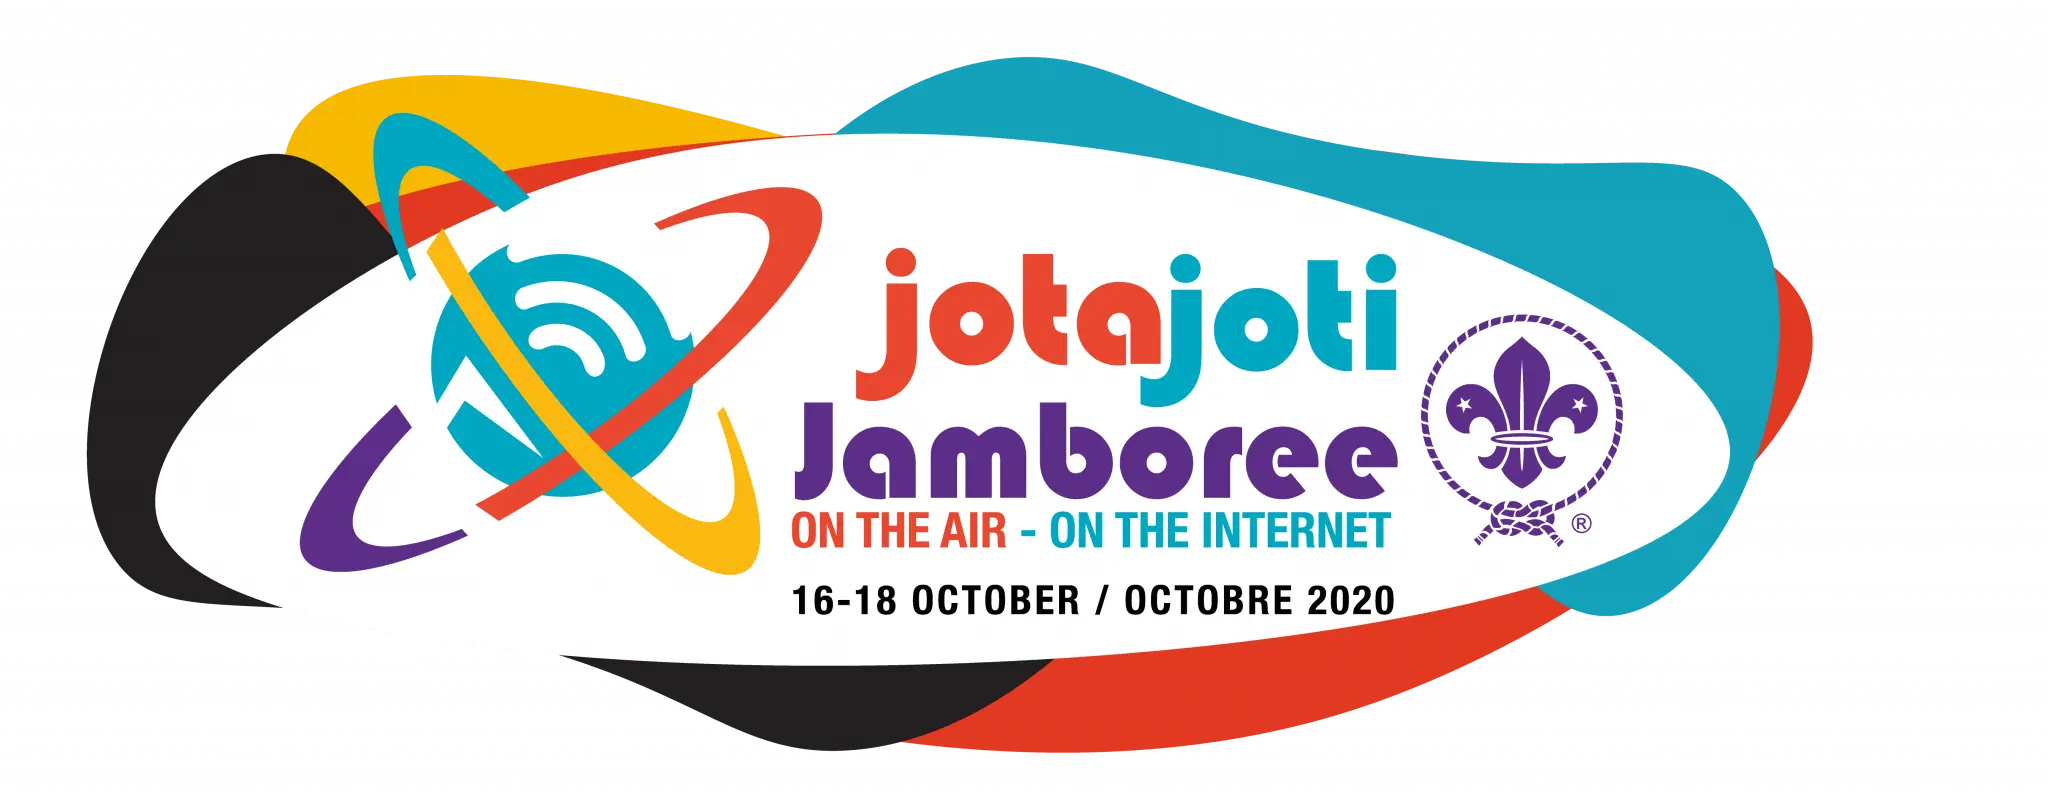 ขอเชิญเข้าร่วมงานชุมนุมลูกเสือนานาชาติดิจิทัล 2563 (JOTA-JOTI 2020) ผ่านทางออนไลน์ ลงทะเบียนรับเกียรติบัตรฟรี